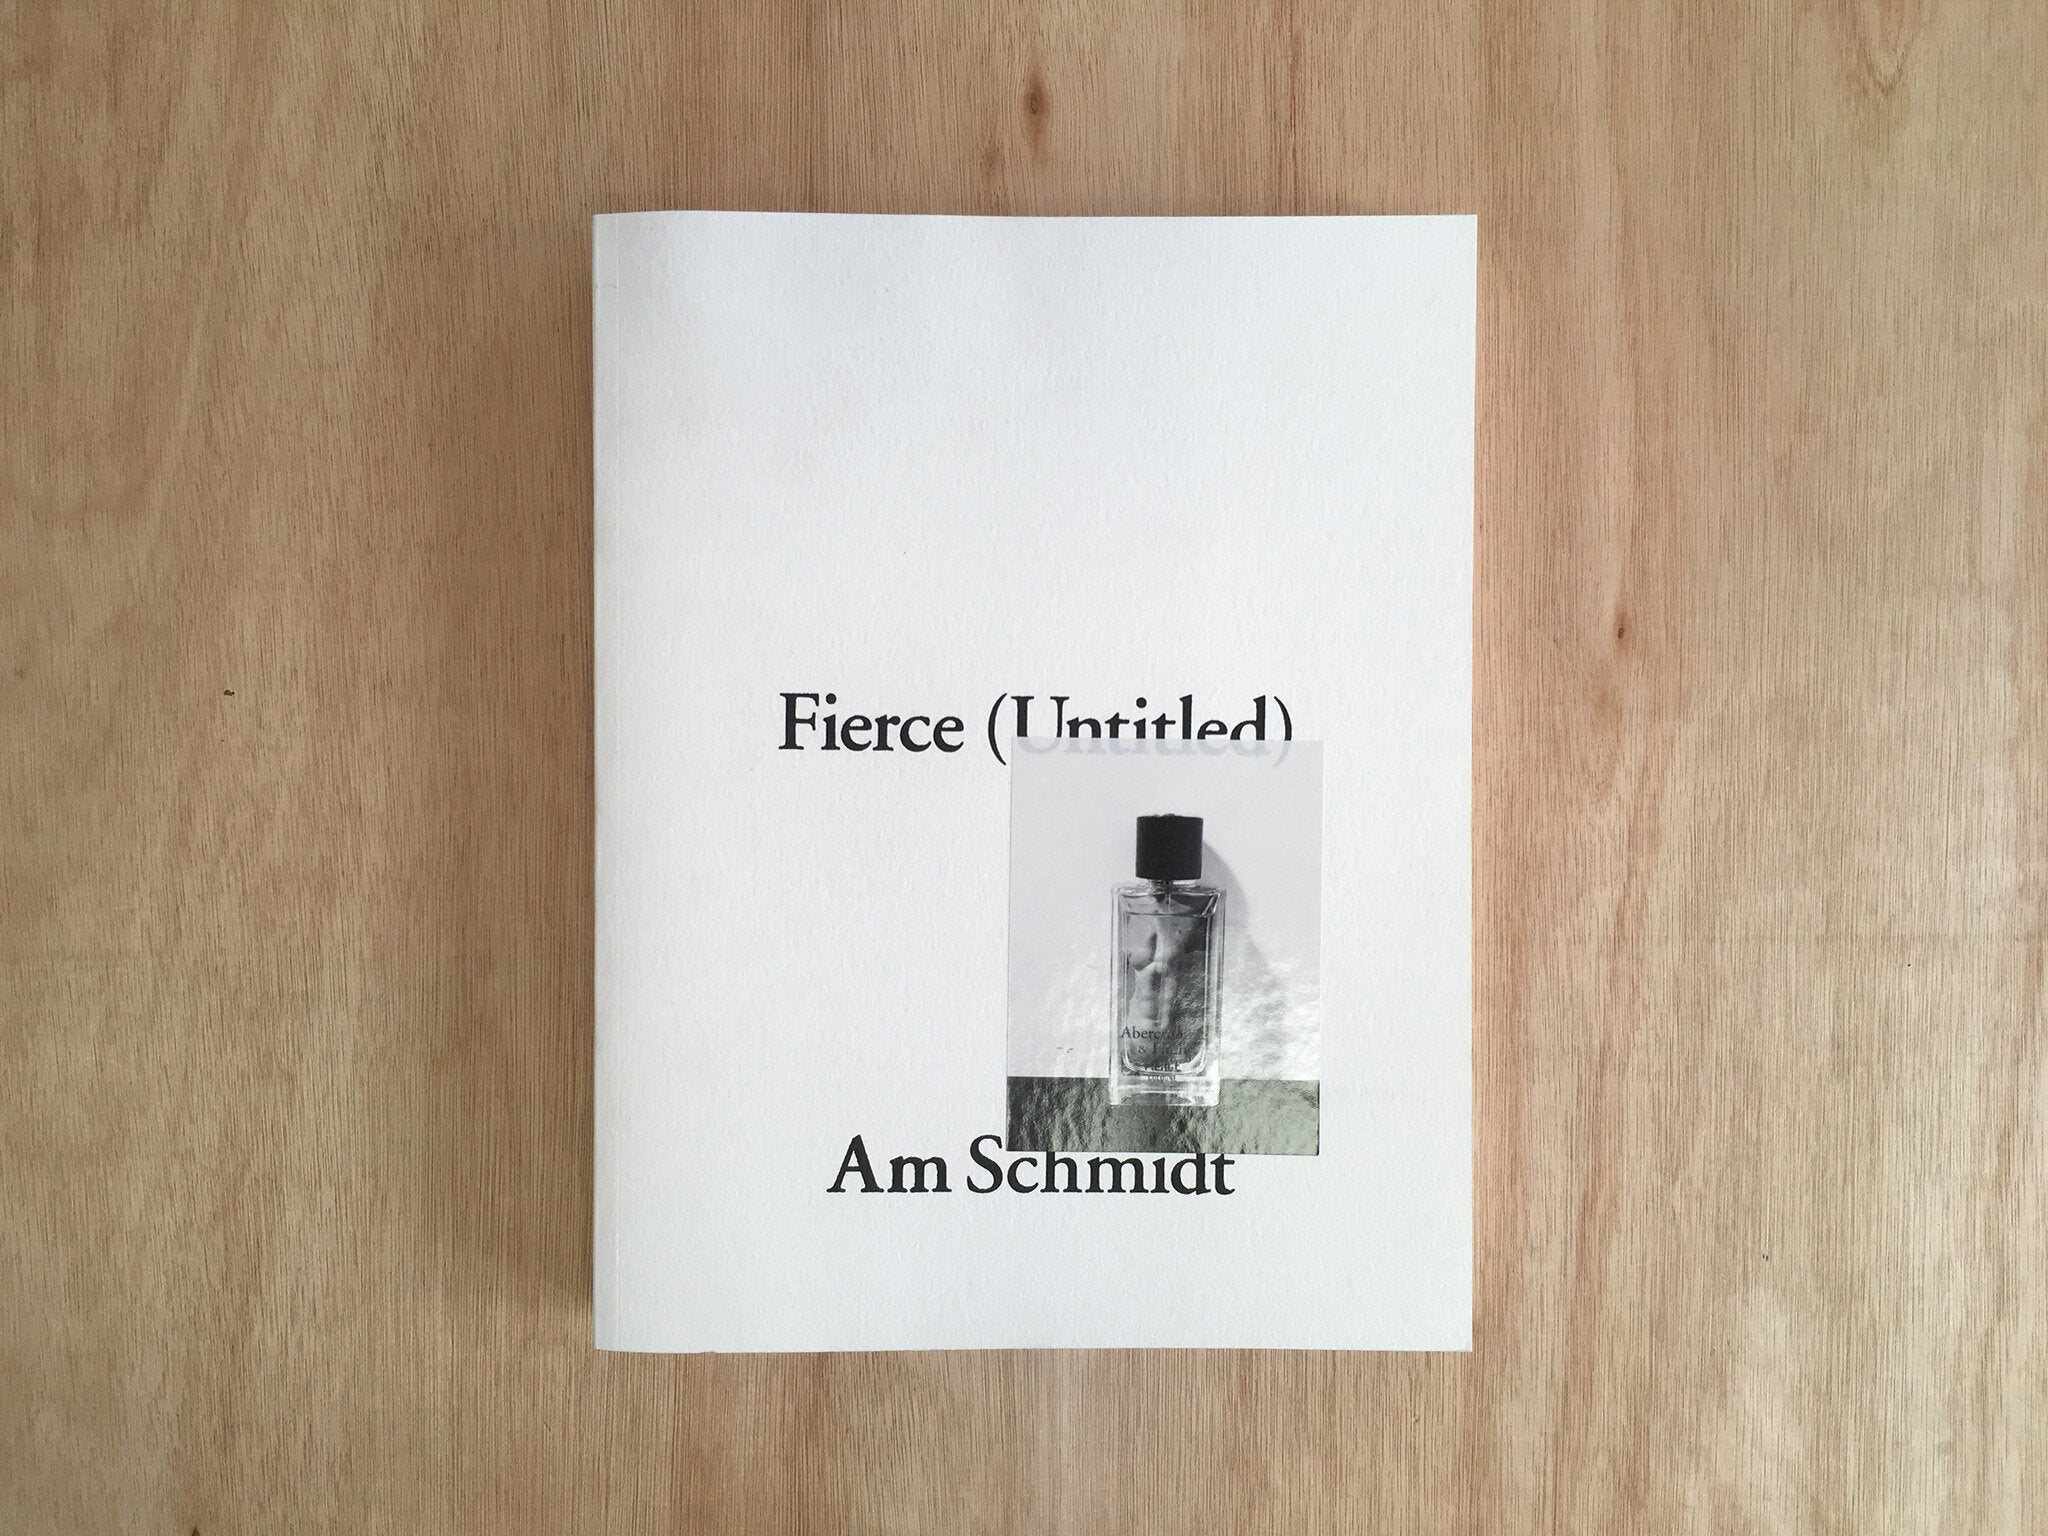 FIERCE (UNTITLED) by Am Schmidt